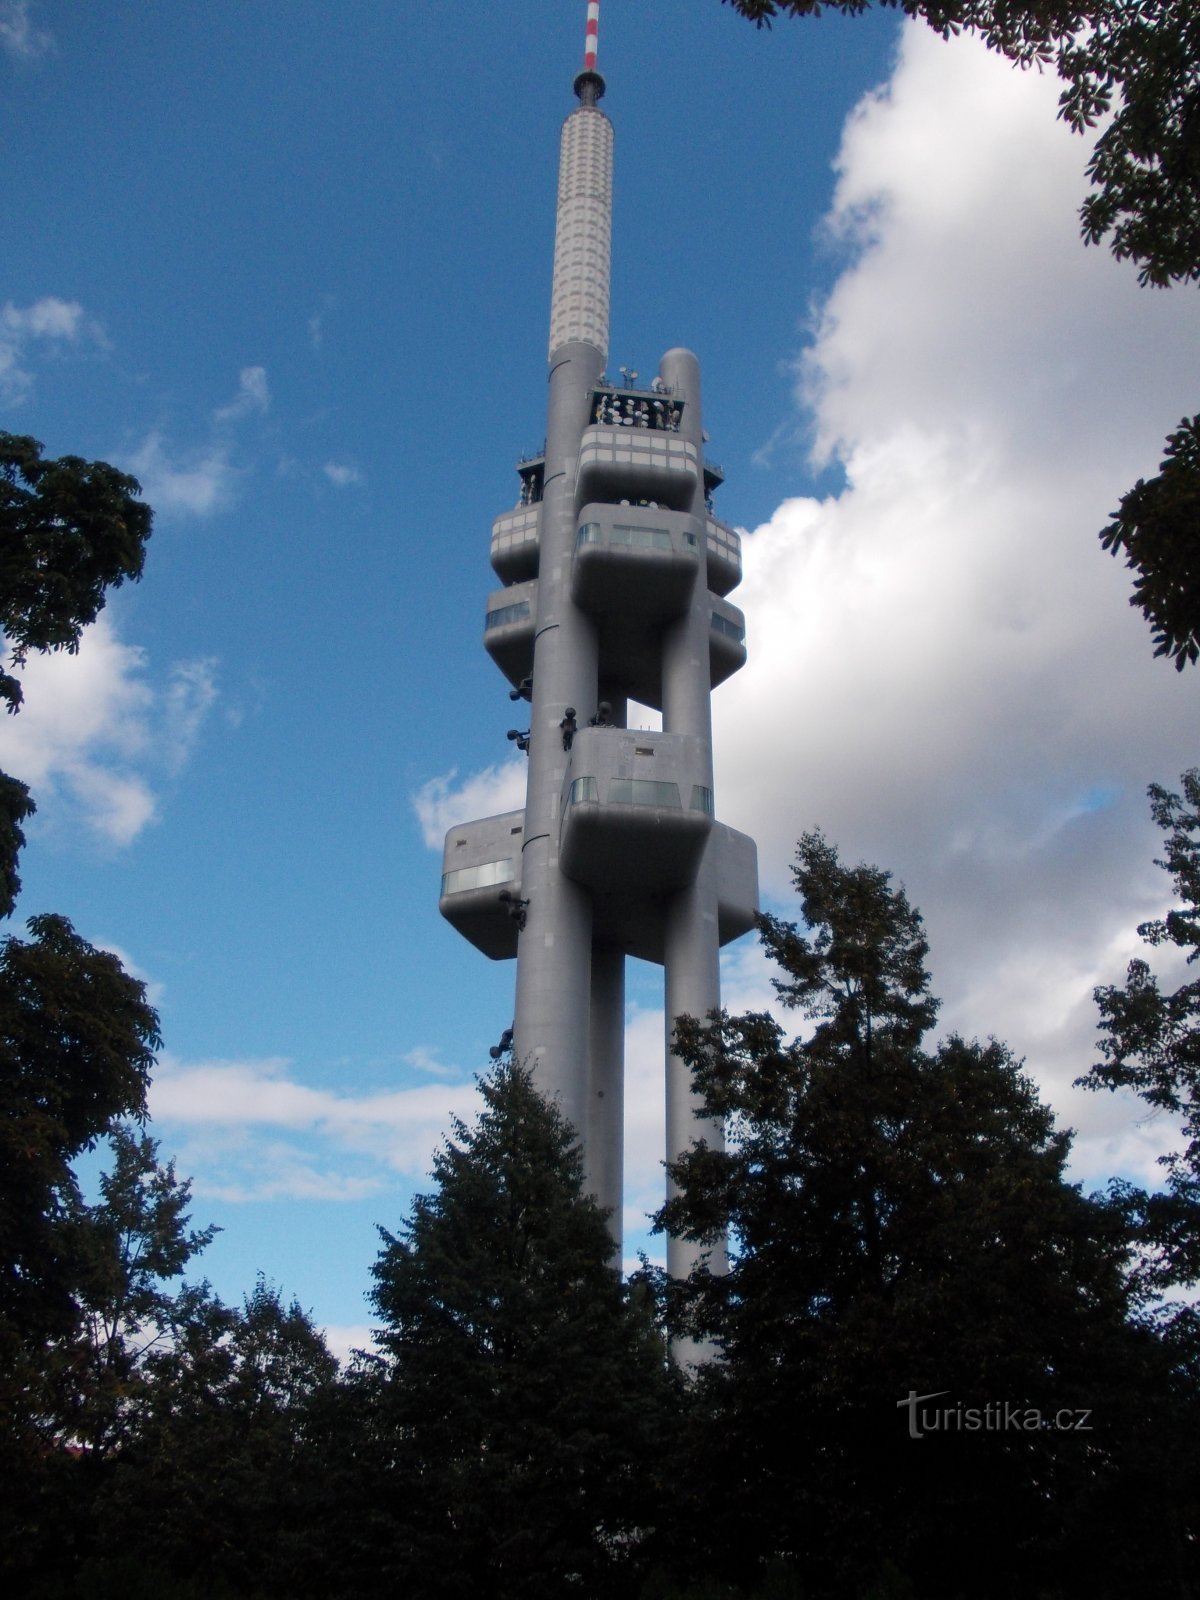 Žižkovská televízna veža 216 m vysoká